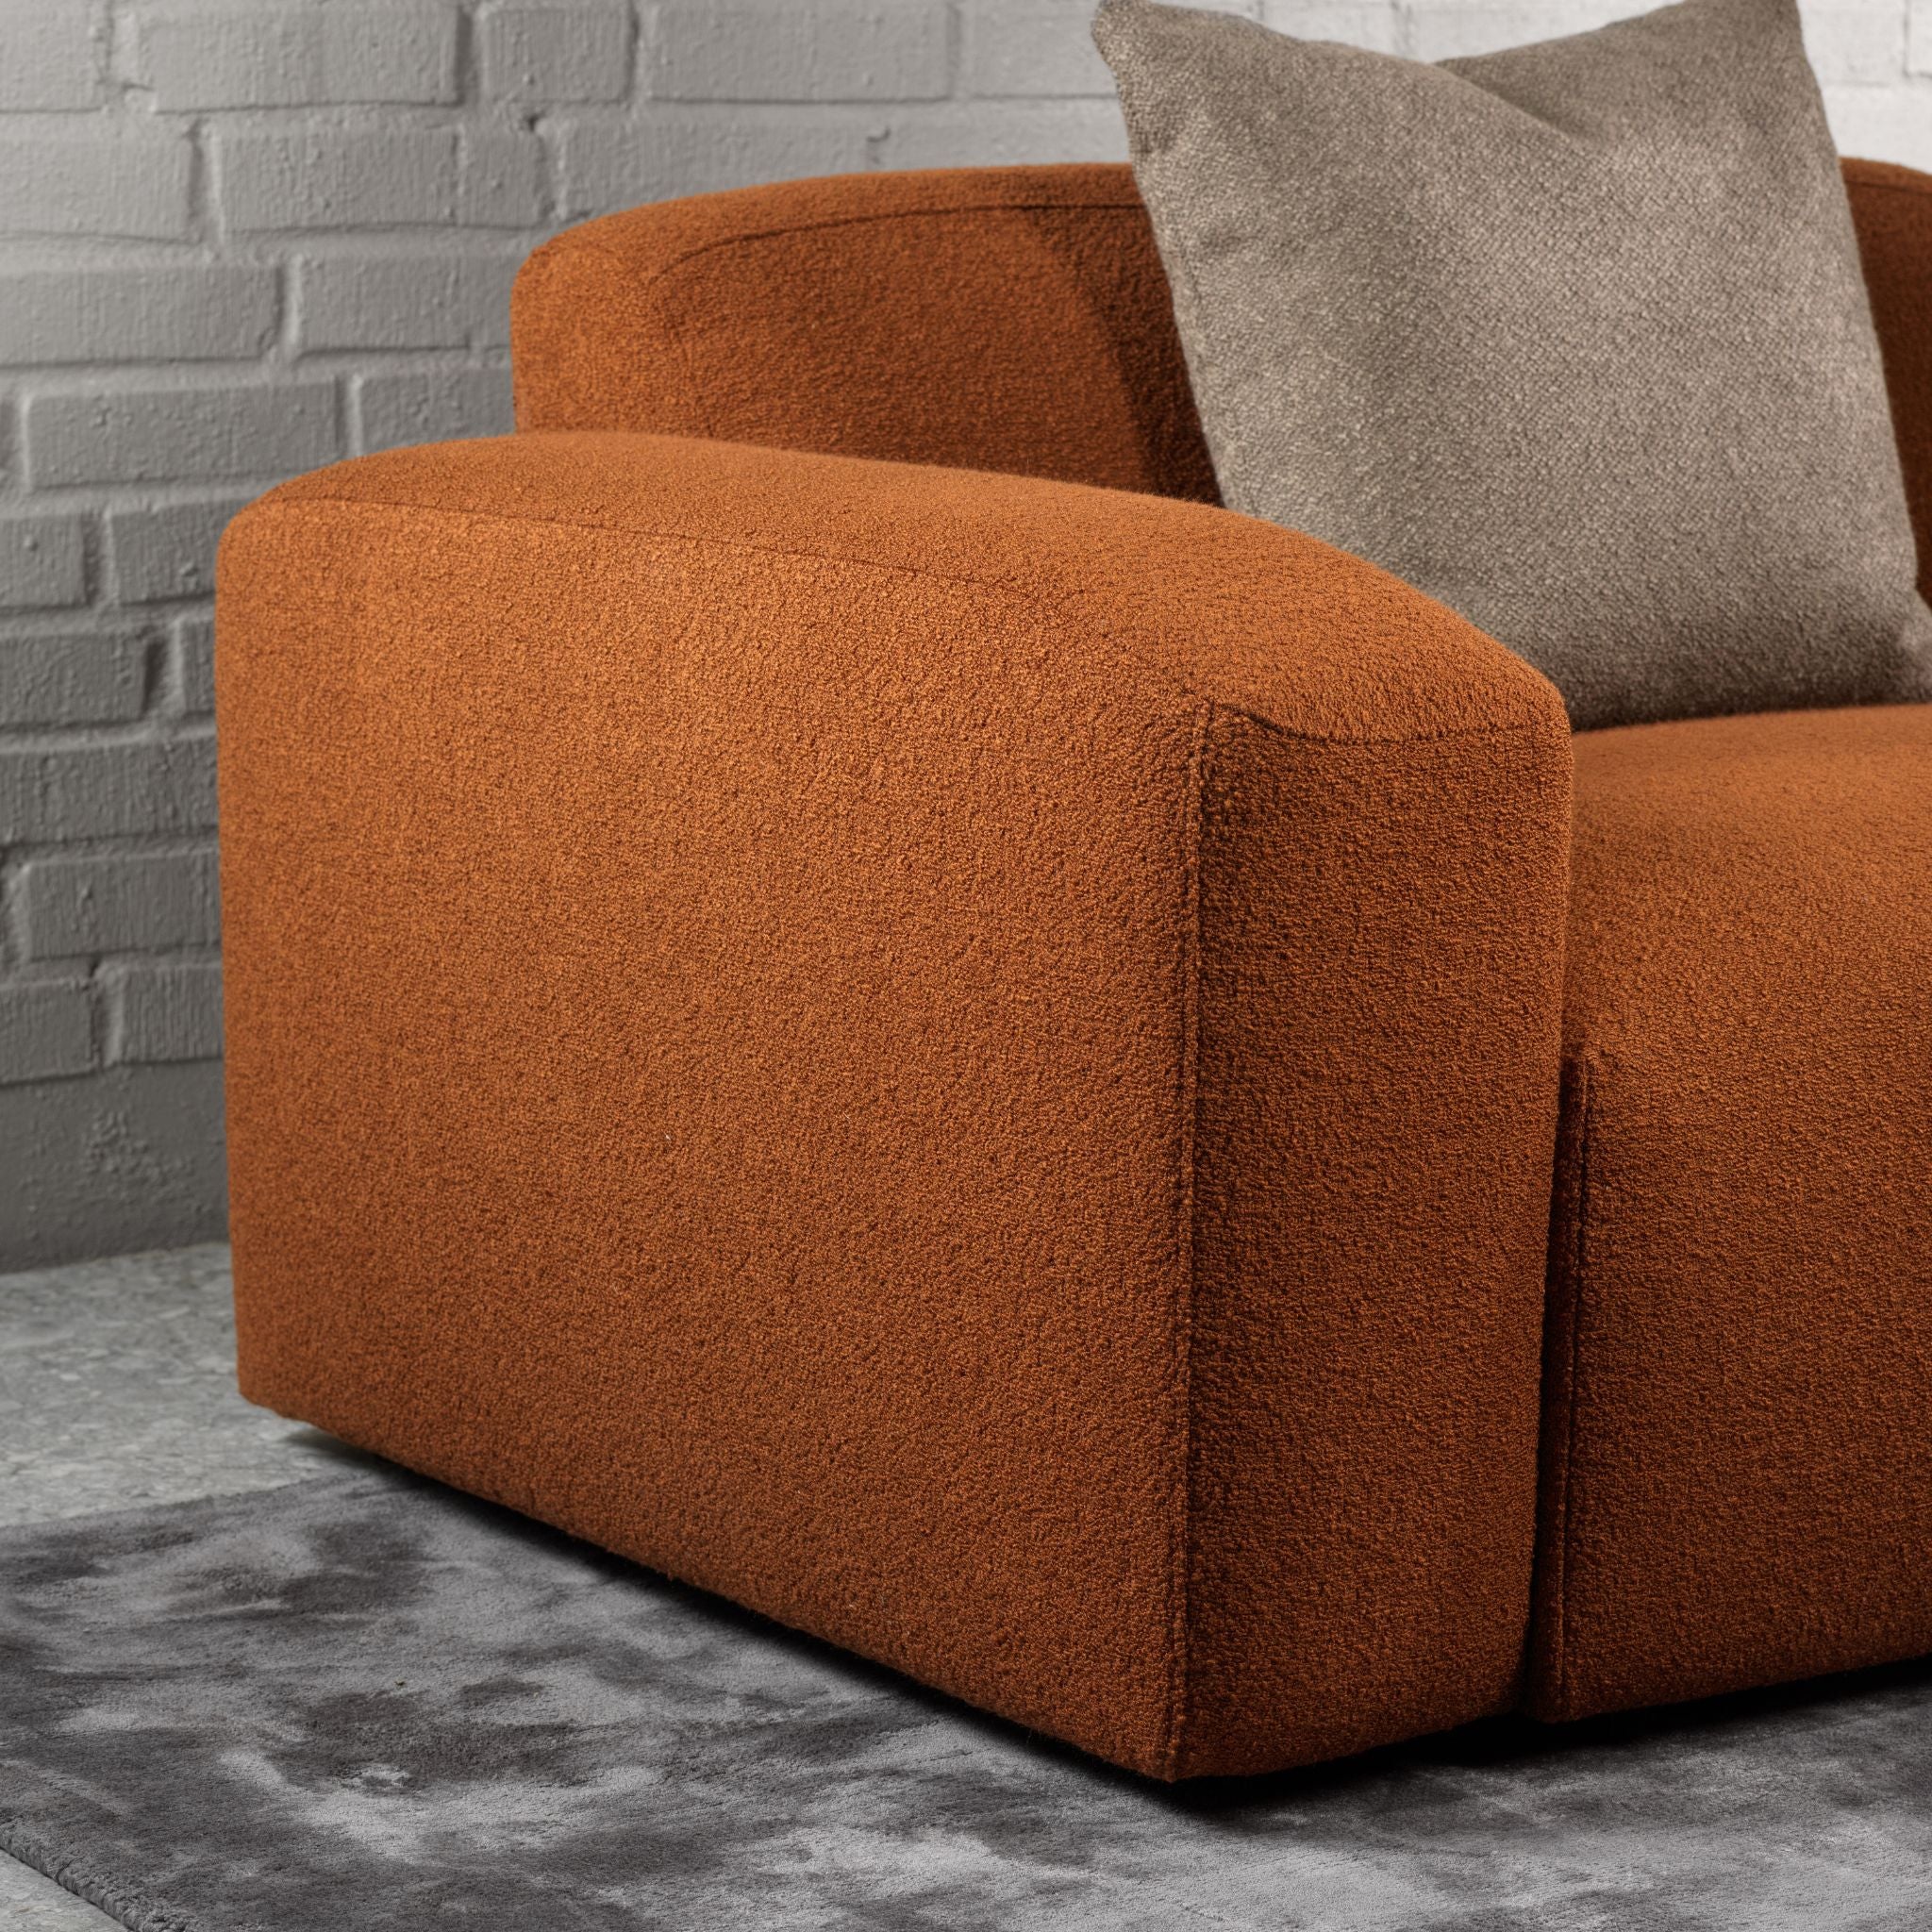 Furninova Block Sofa - ModernistaLiving